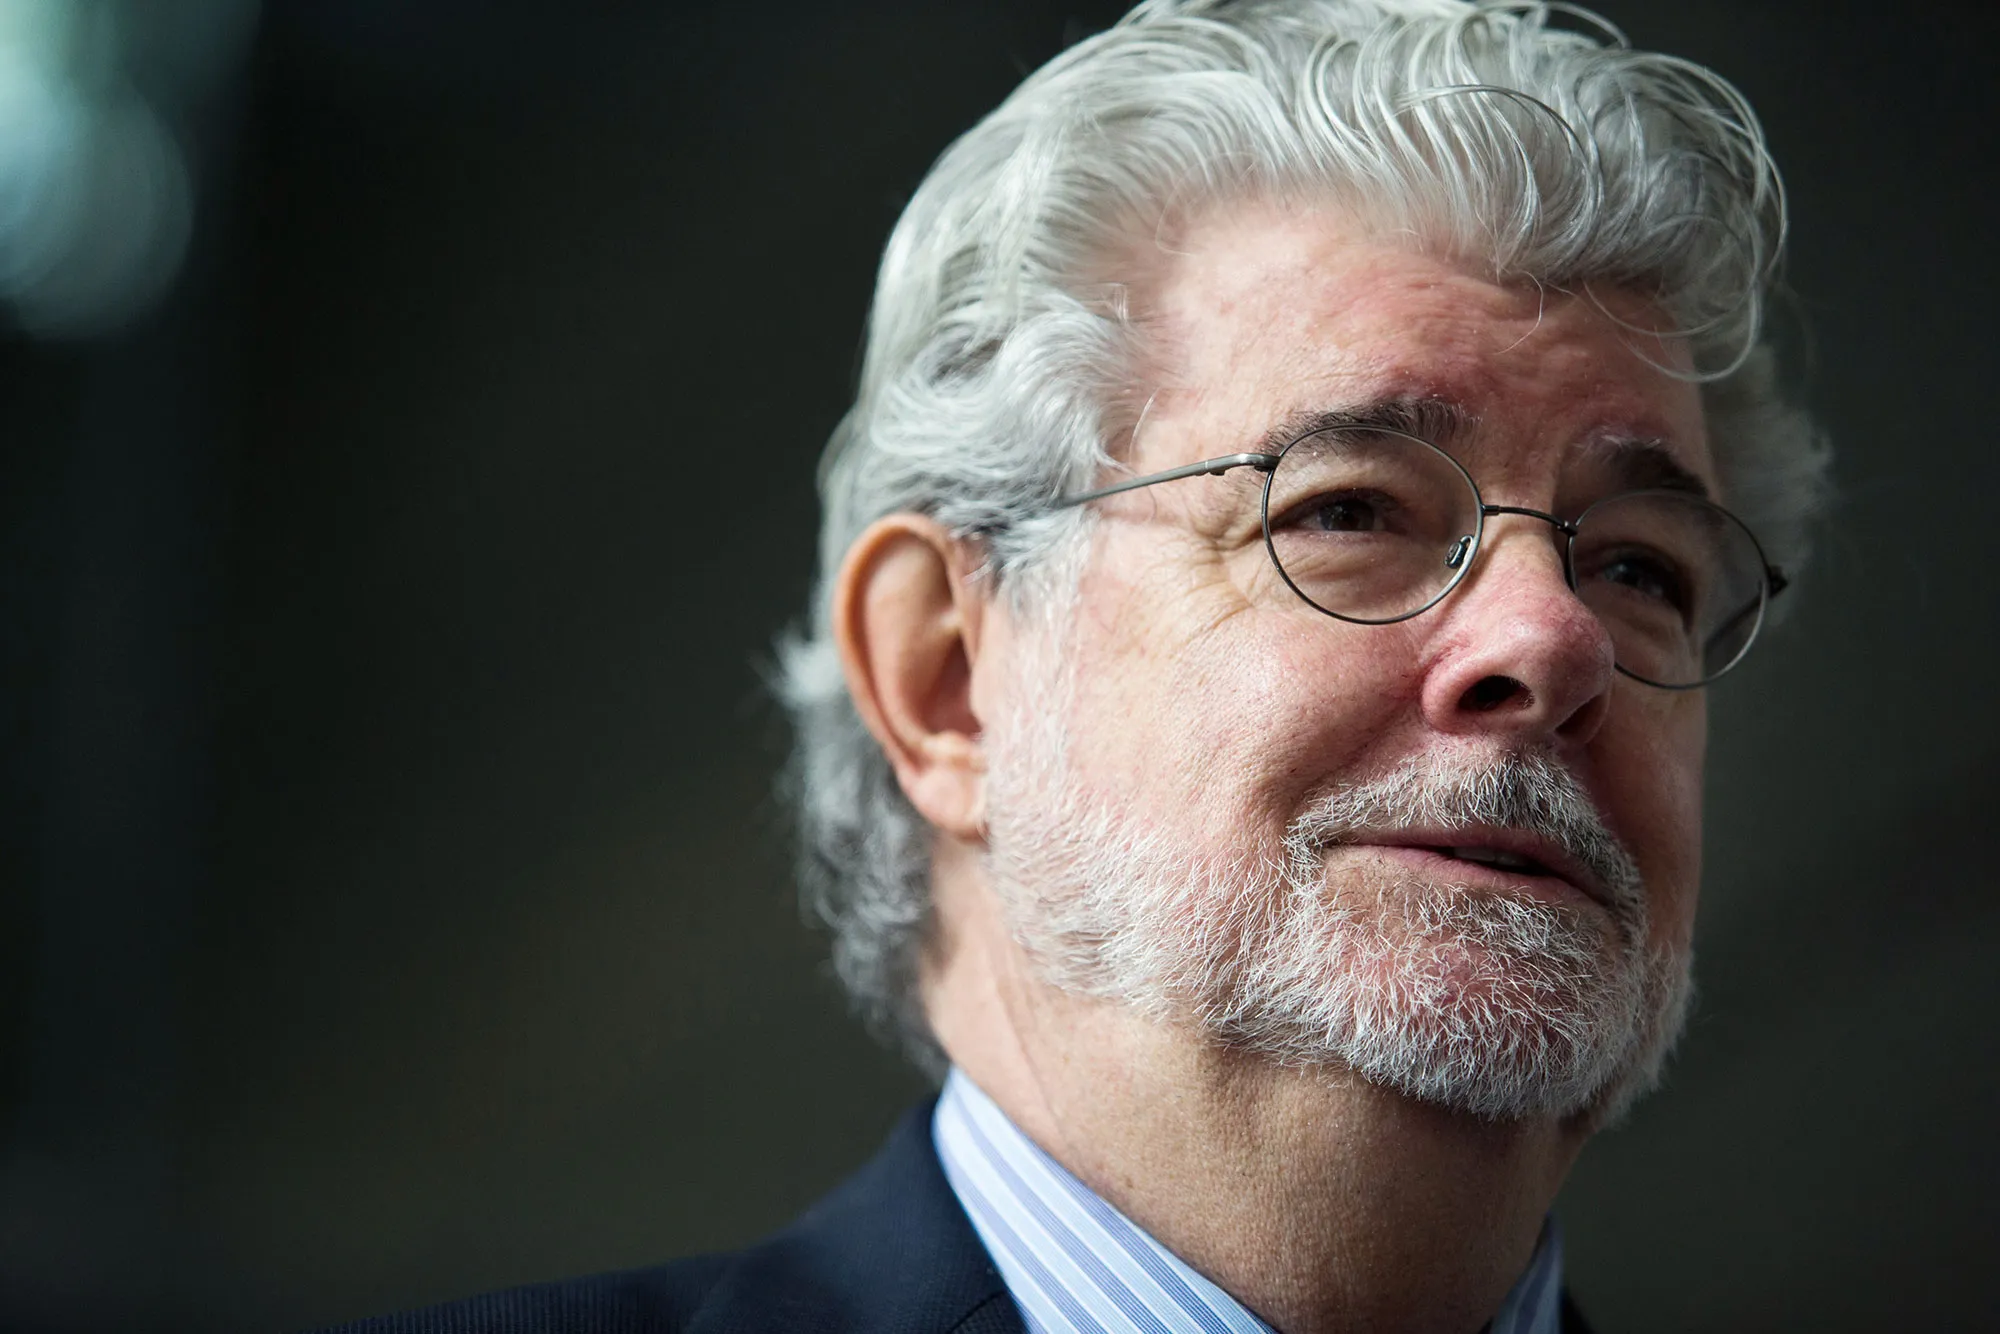 Festival de Cannes homenageará George Lucas com Palma de Ouro honorária.